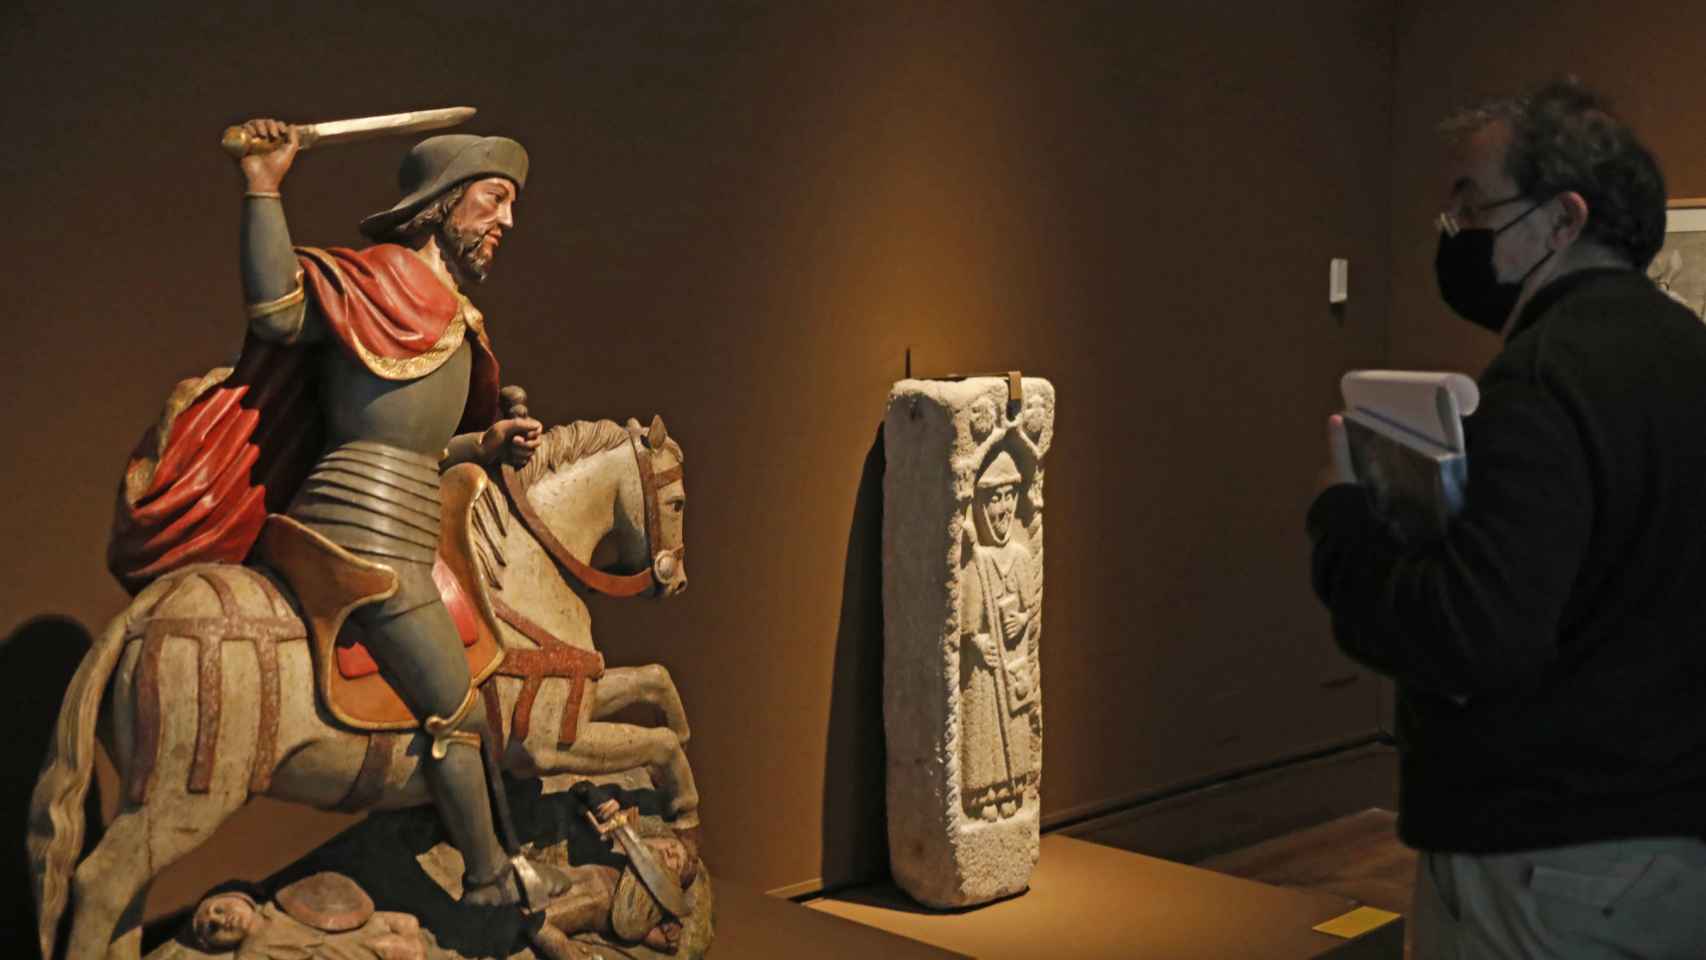 Un visitante junto a una estatua del apóstol y un bajorrelieve de un peregrino.